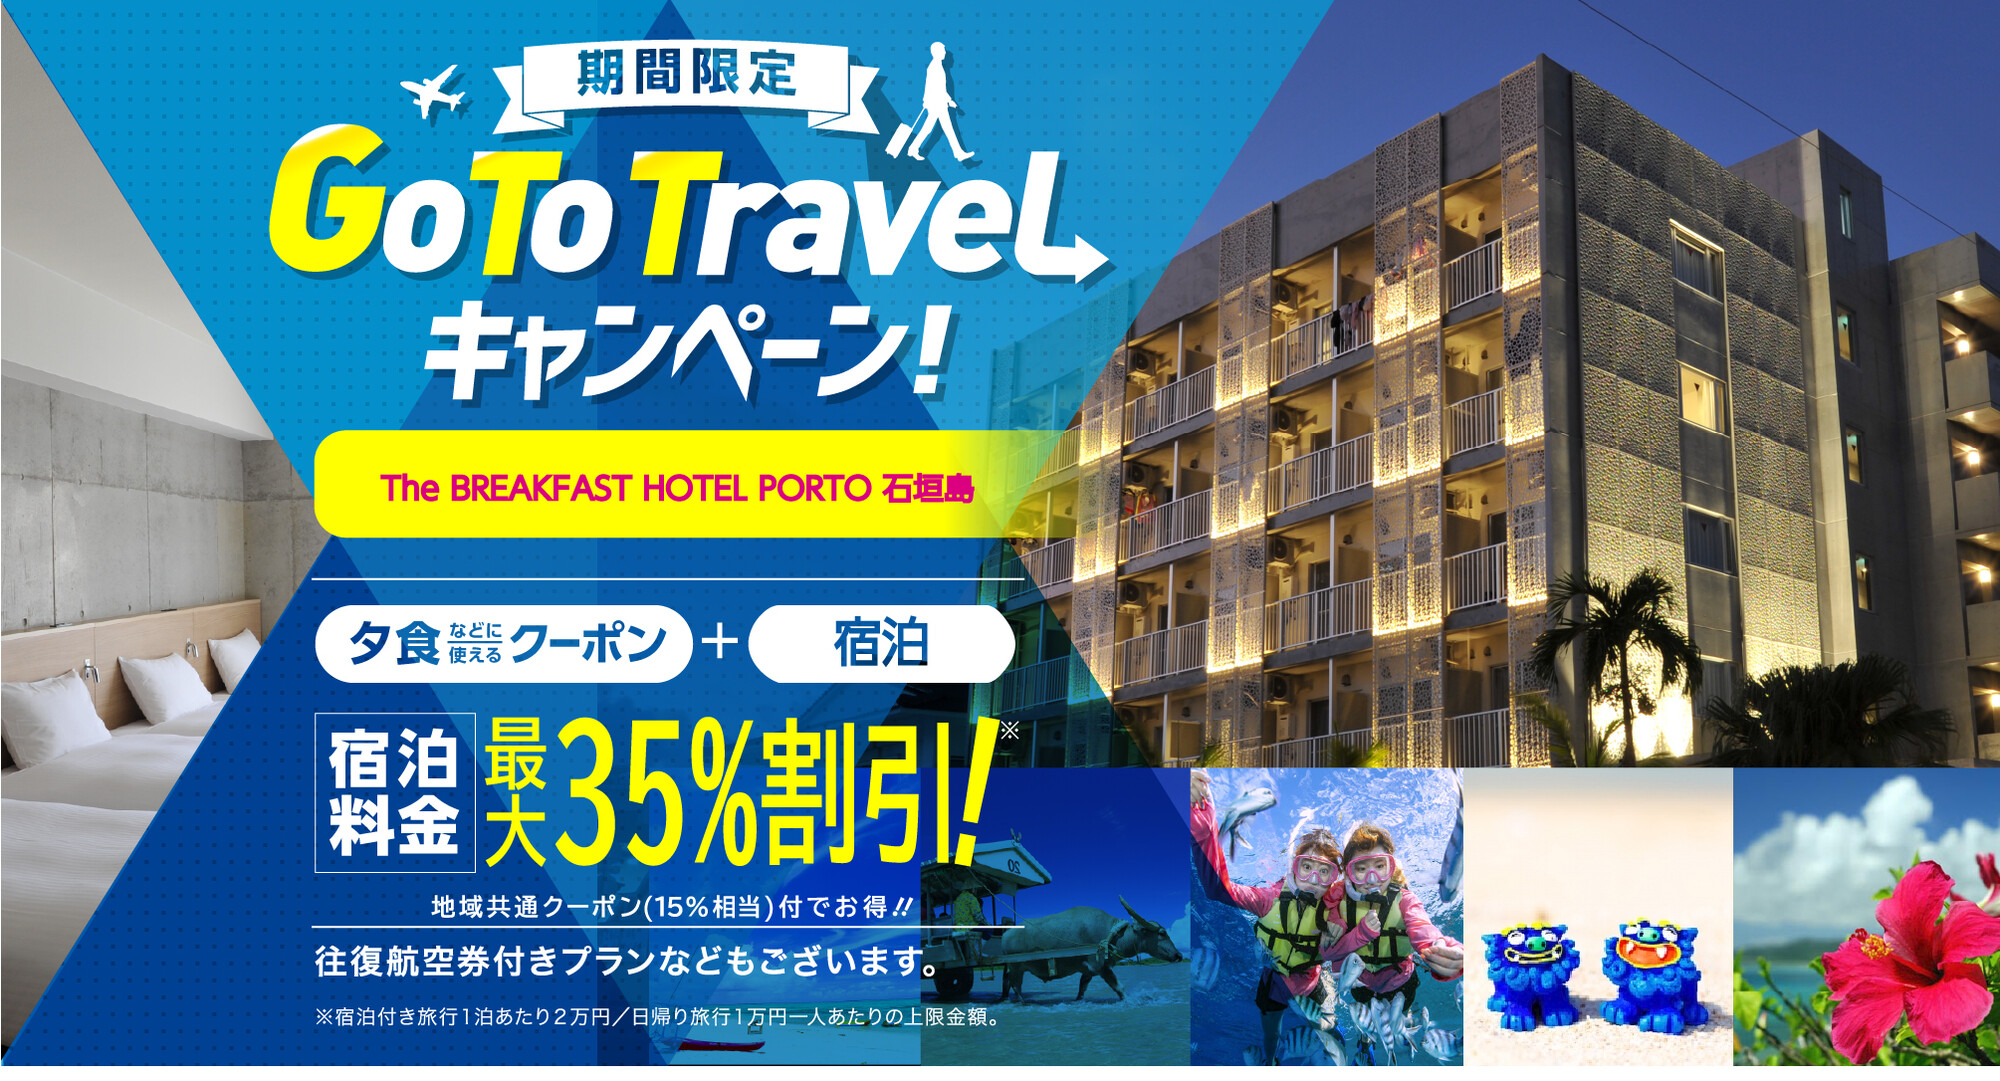 The BREAKFAST HOTEL PORTO 石垣島 GOTO